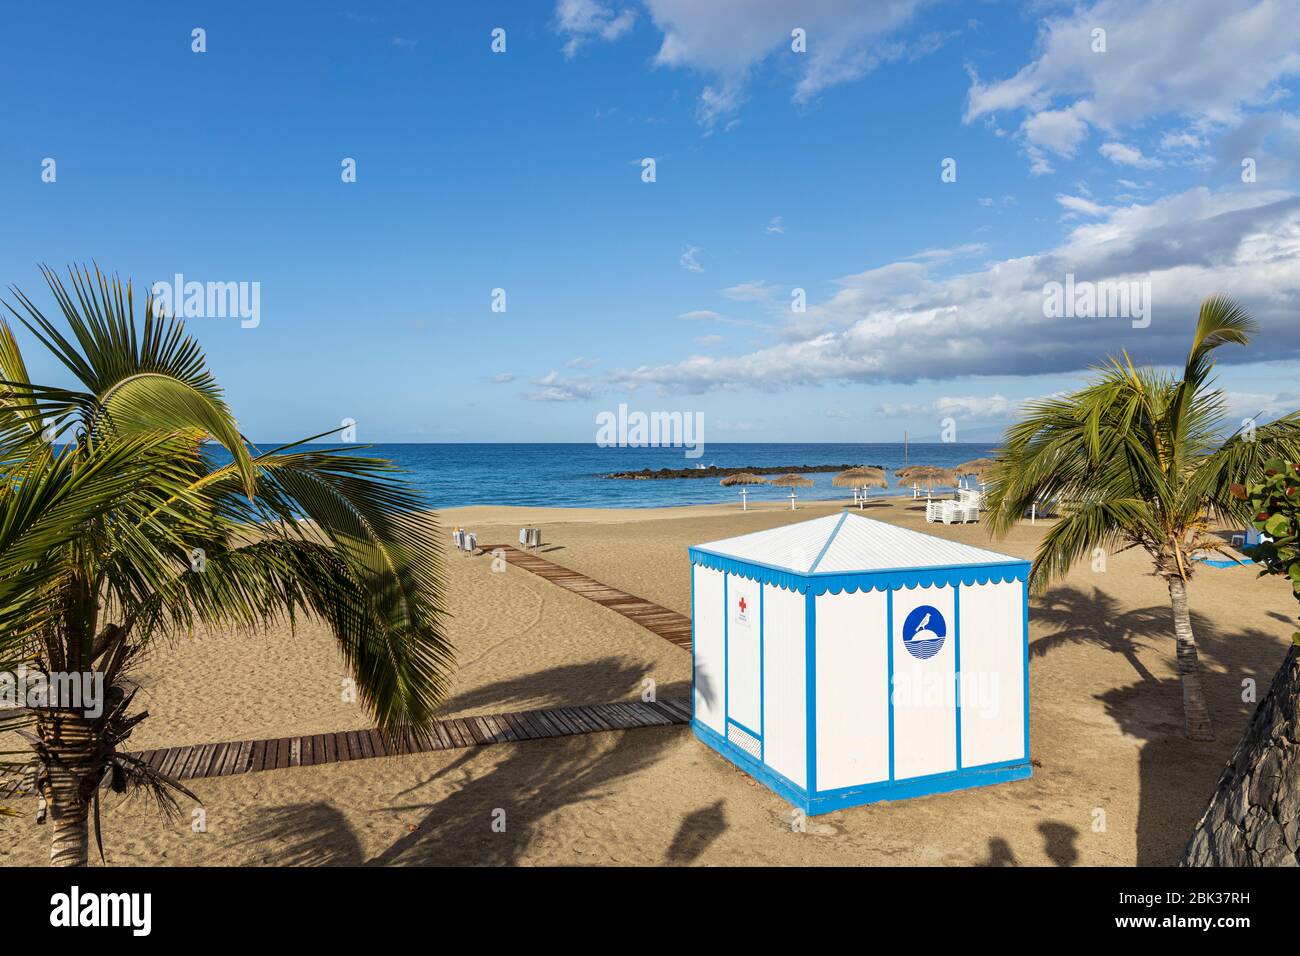 Spiaggia vuota, playa del duque, nelle zone turistiche di Costa Adeje, Tenerife, Isole Canarie, Spagna Foto Stock